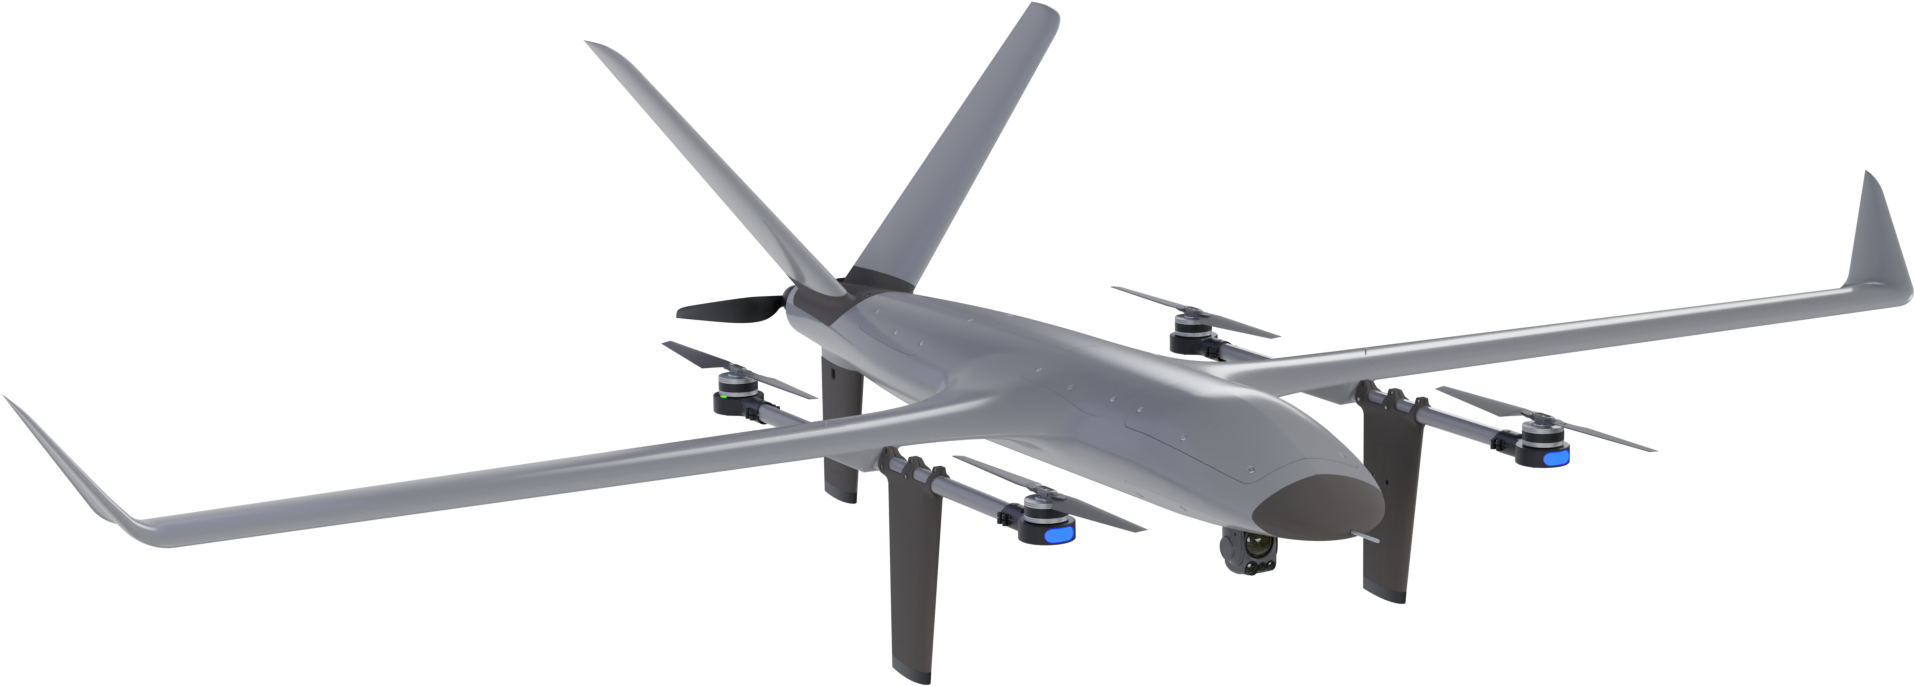 VTOne long range VTOL von portugiesischem Drohnenhersteller